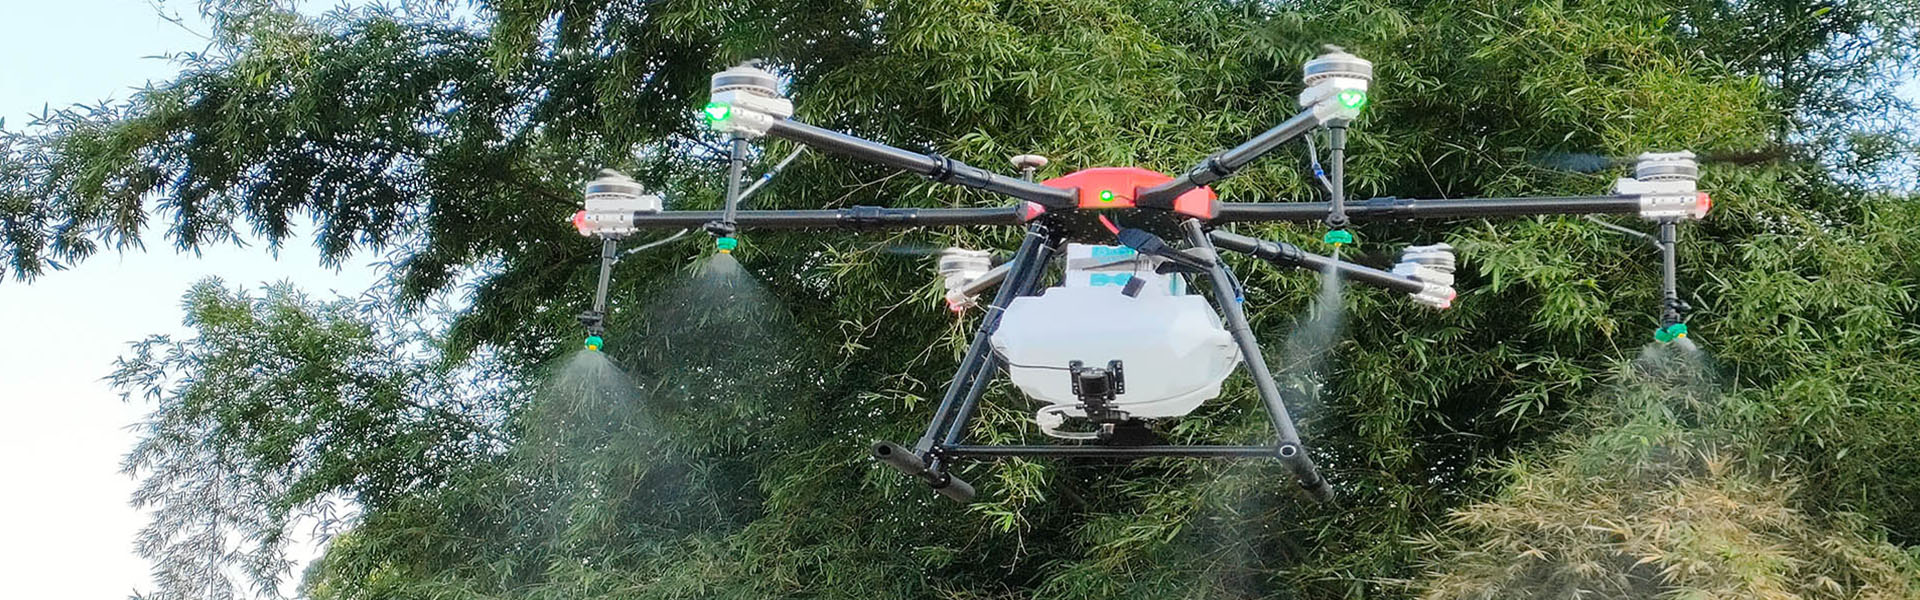 農業UAV、植物保護UAV、農業UAVアクセサリー,Shenzhen fnyuav technology co.LTD